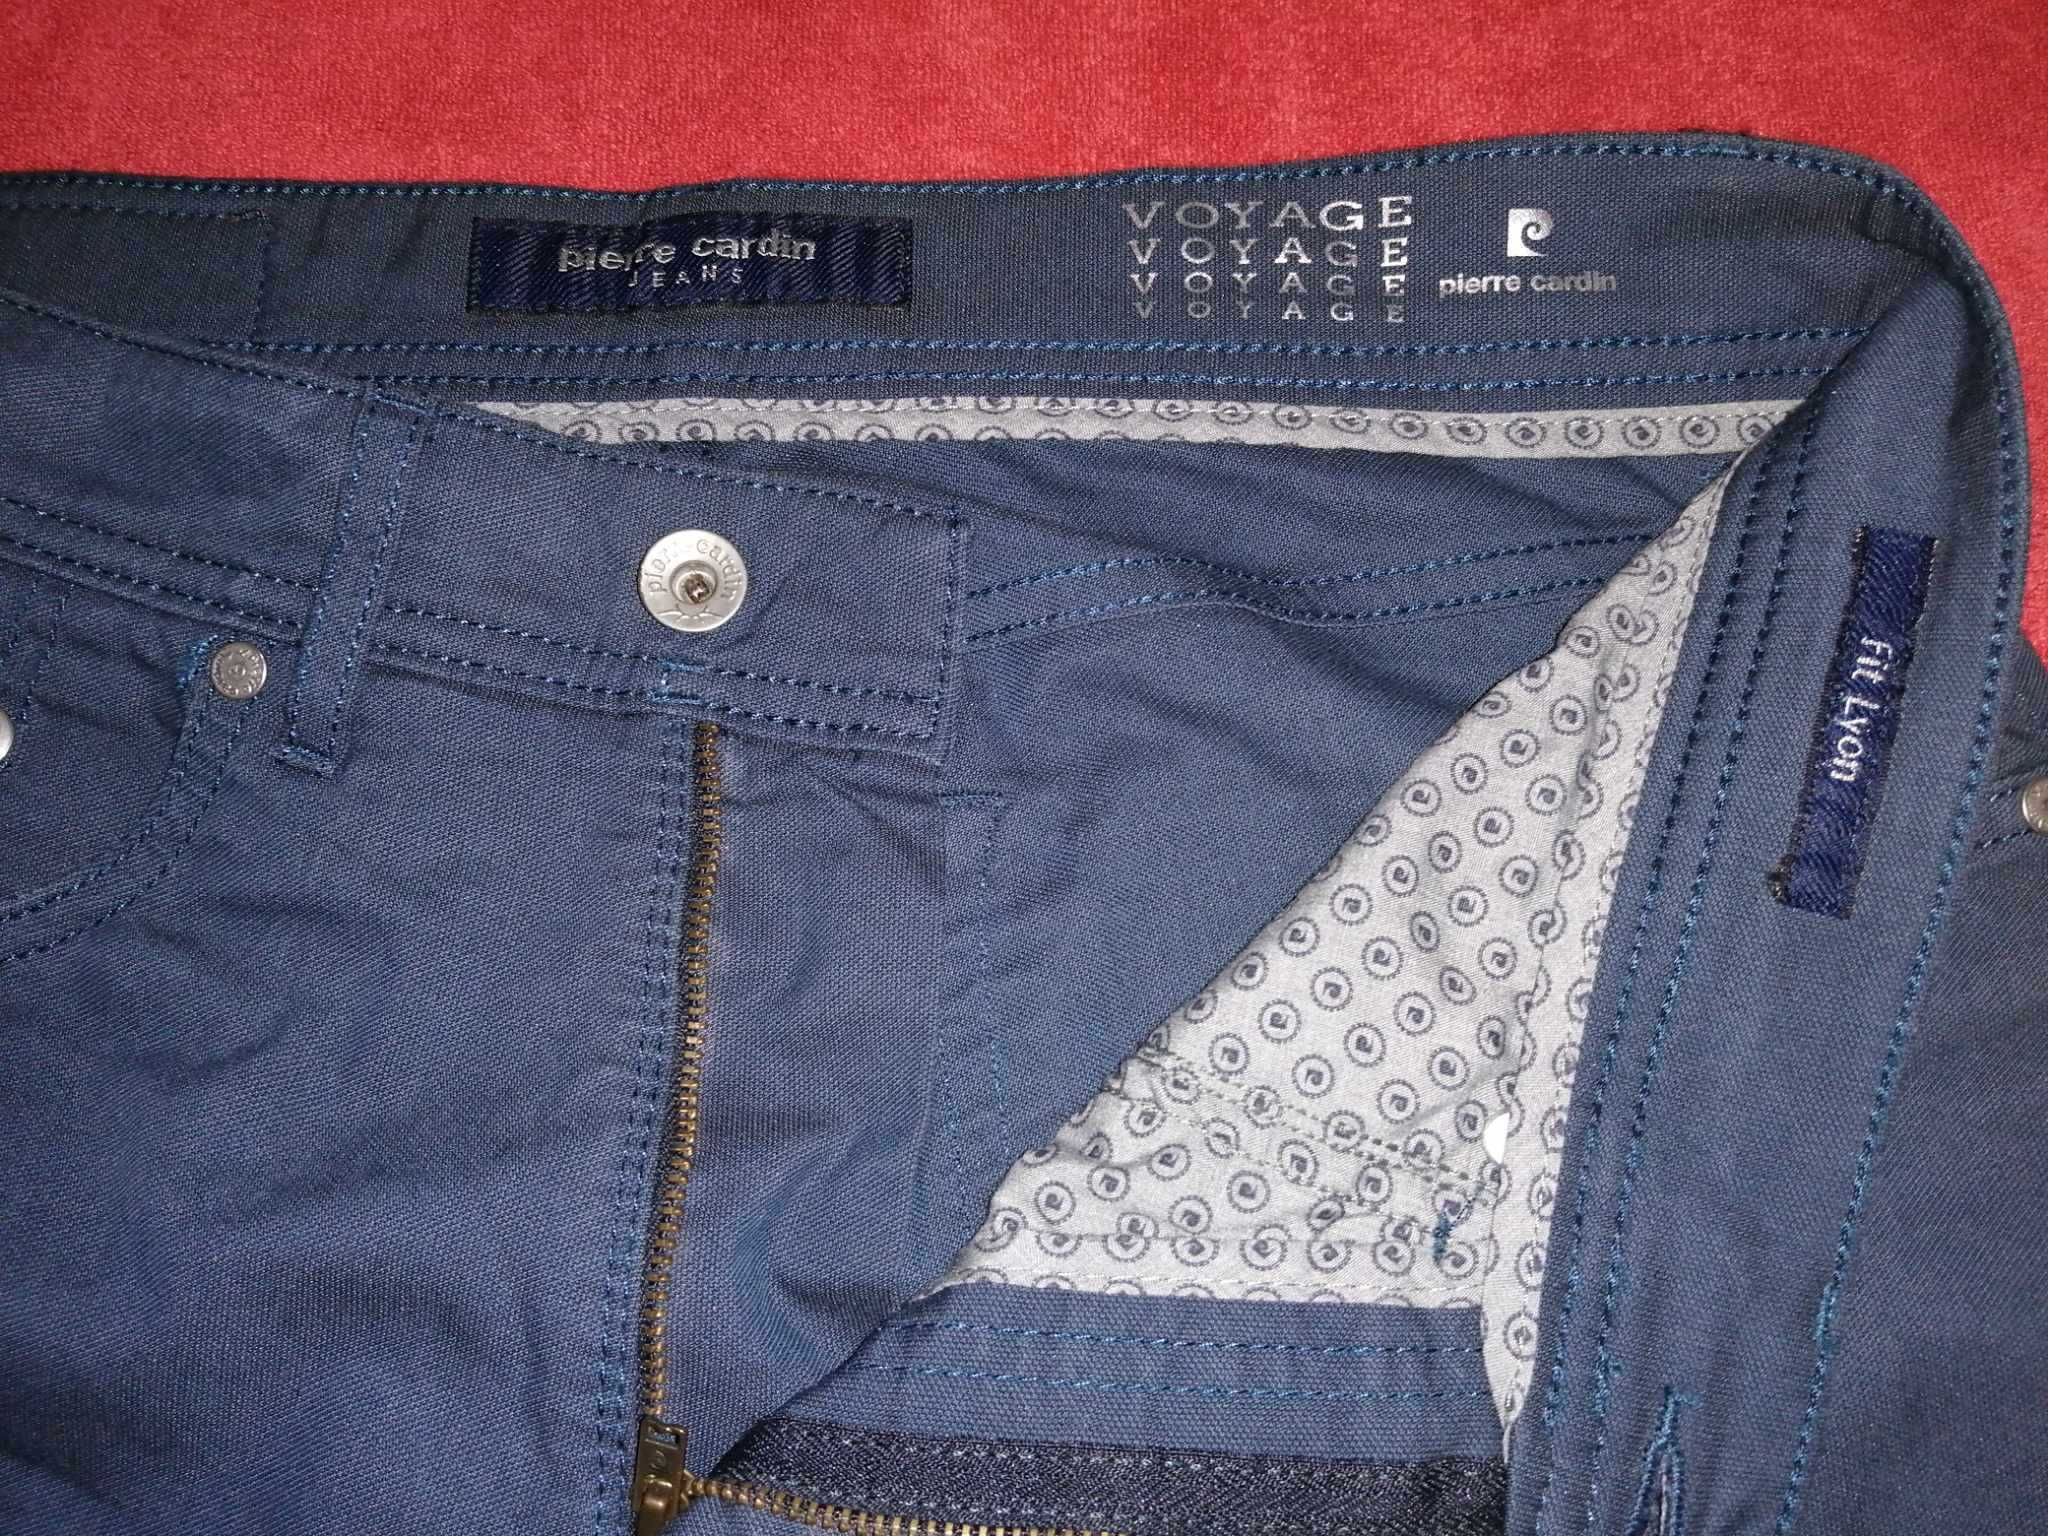 PIERRE CARDIN Jeans Voyage Fit Lion Nowe Spodnie W32 L32 Męskie